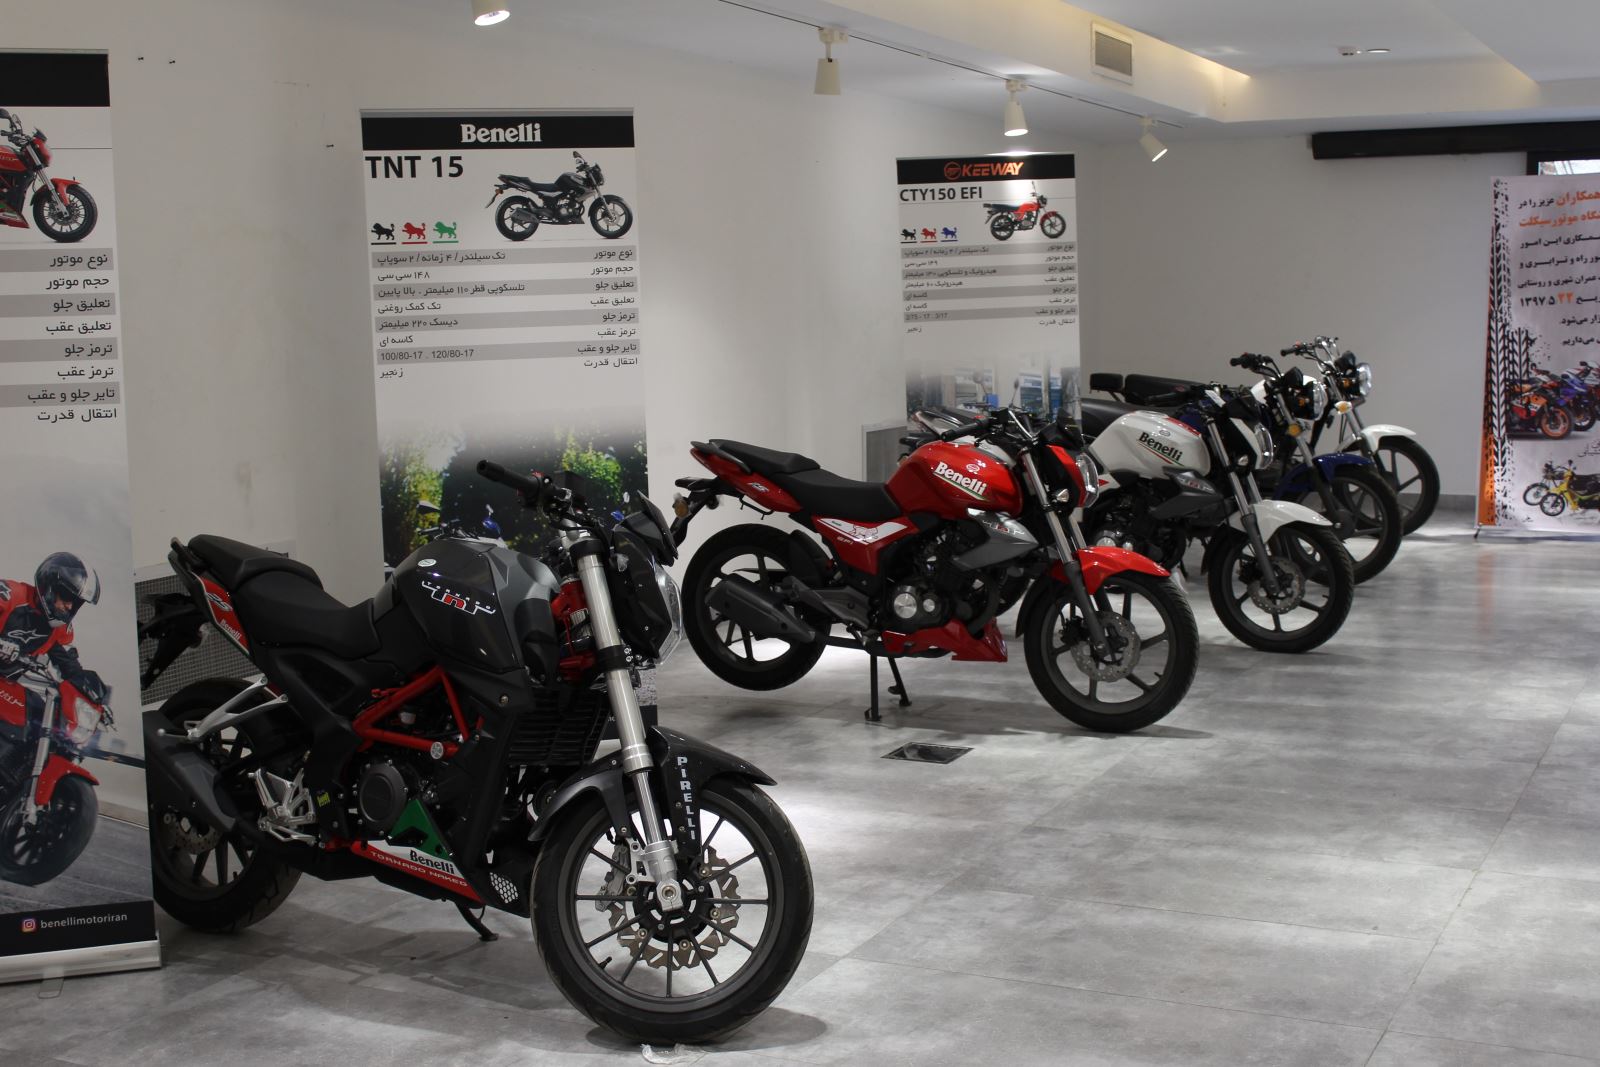 عکسی از سالن نمایشگاه موتورسیکلت که تعداد 5 موتورسیکلت از برند benelli در آن قرار دارد و پشت سر هر موتور یک بنر بزرگ قرار گرفته که عکس، مدل و مشخصات فنی هر کدام در آن نوشته شده.